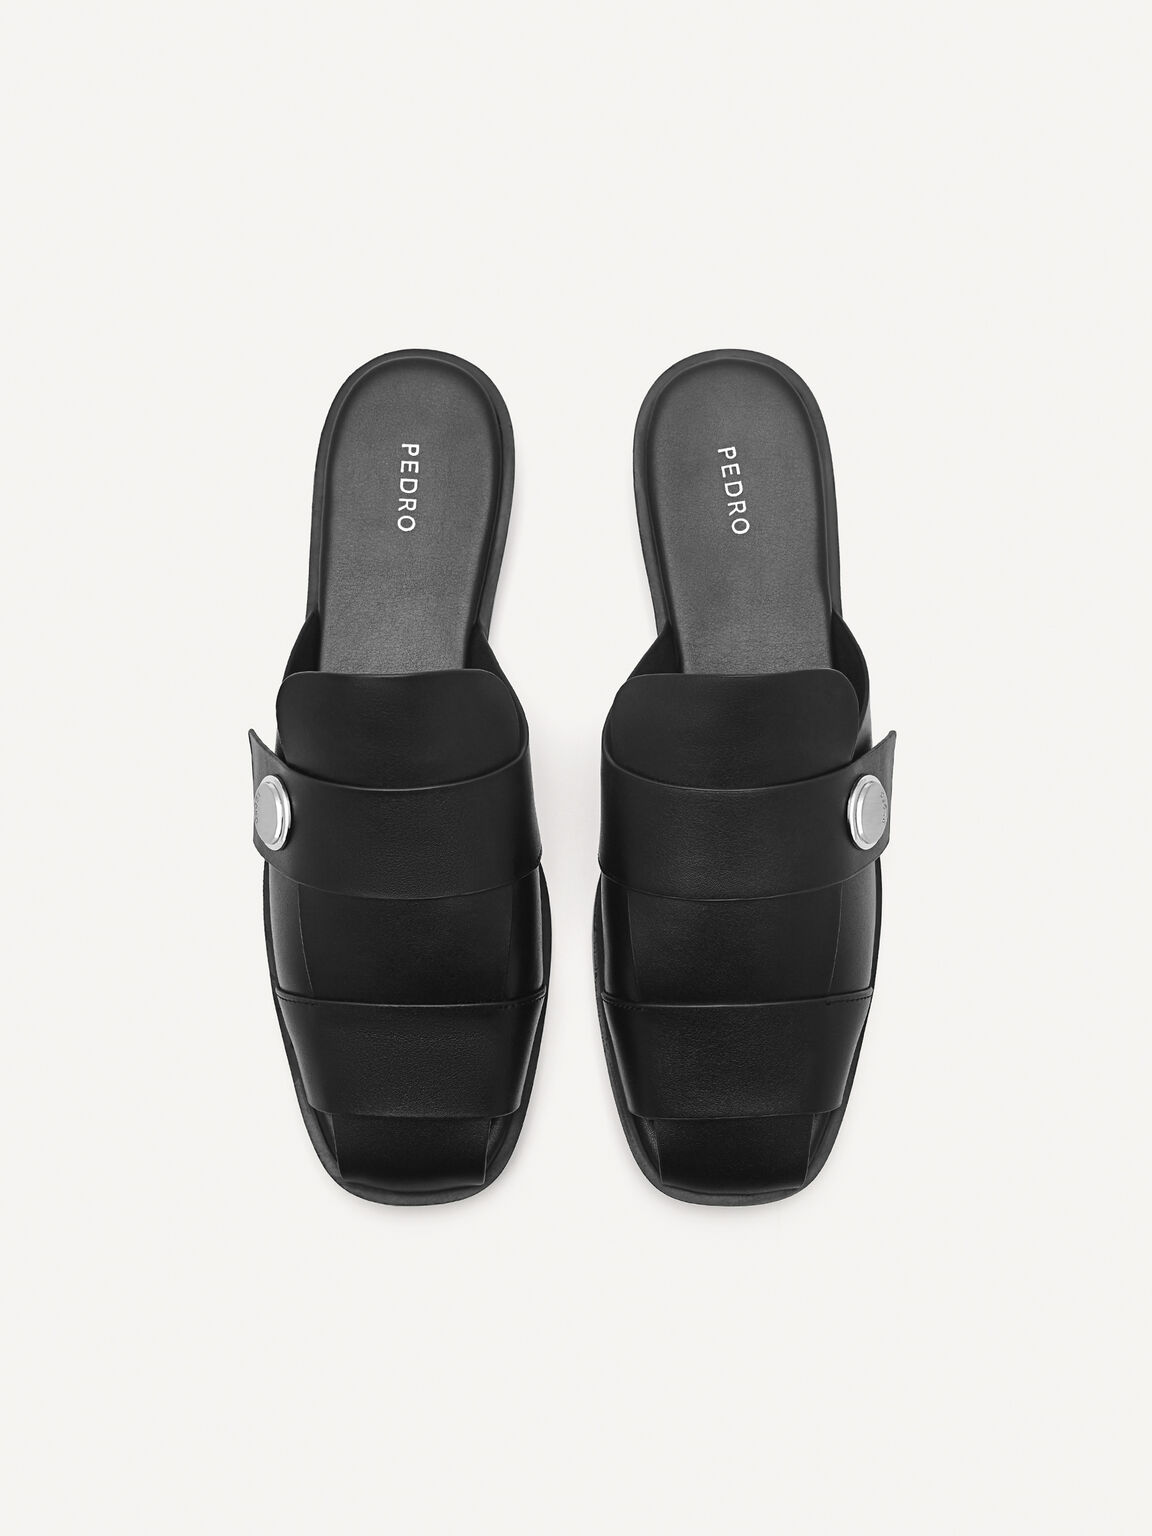 Orb Caged Sandals, Black